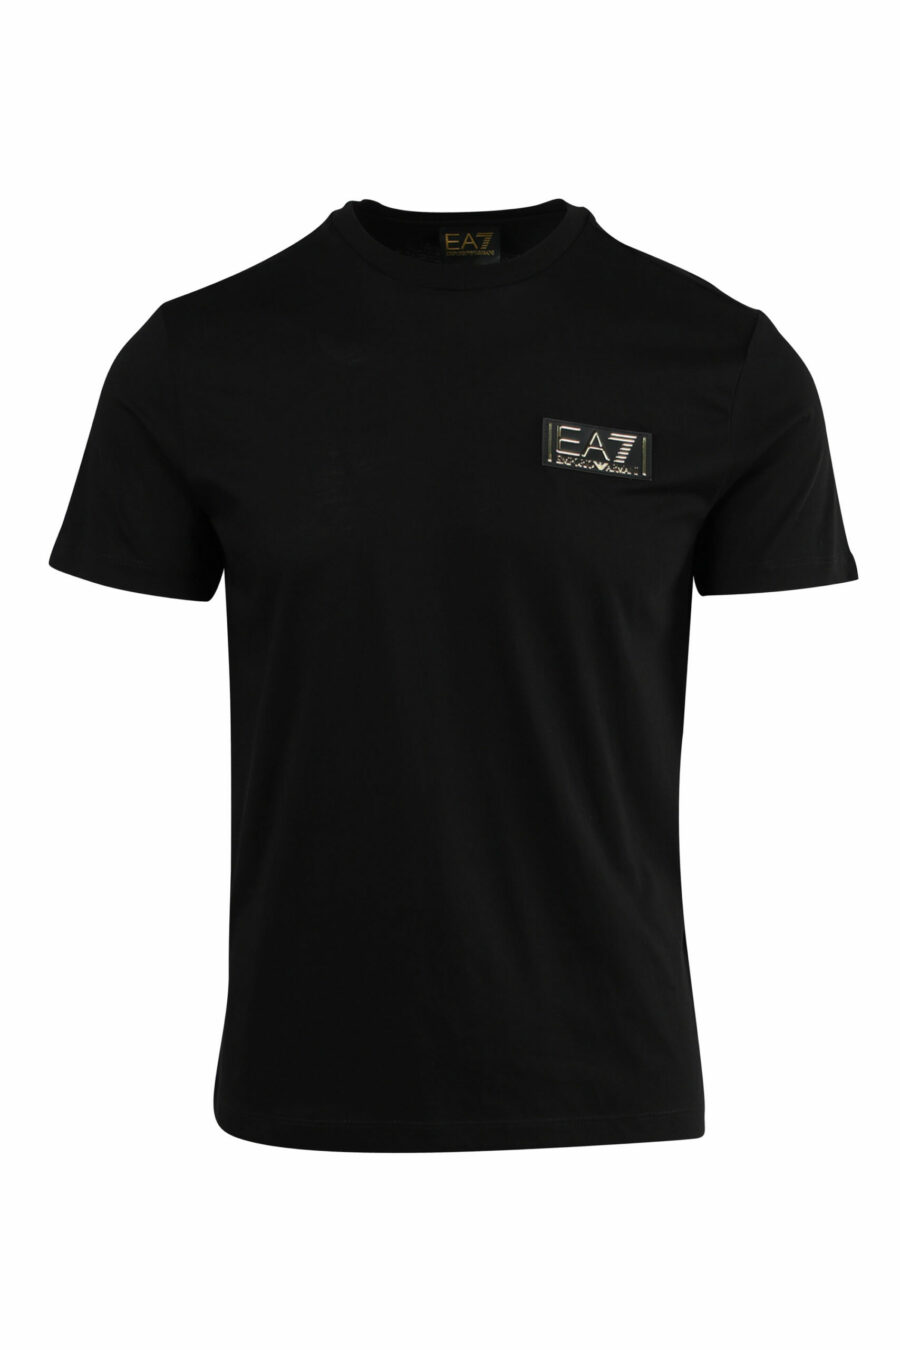 T-shirt noir avec mini-logo doré "lux identity" - 8057767515805 scaled